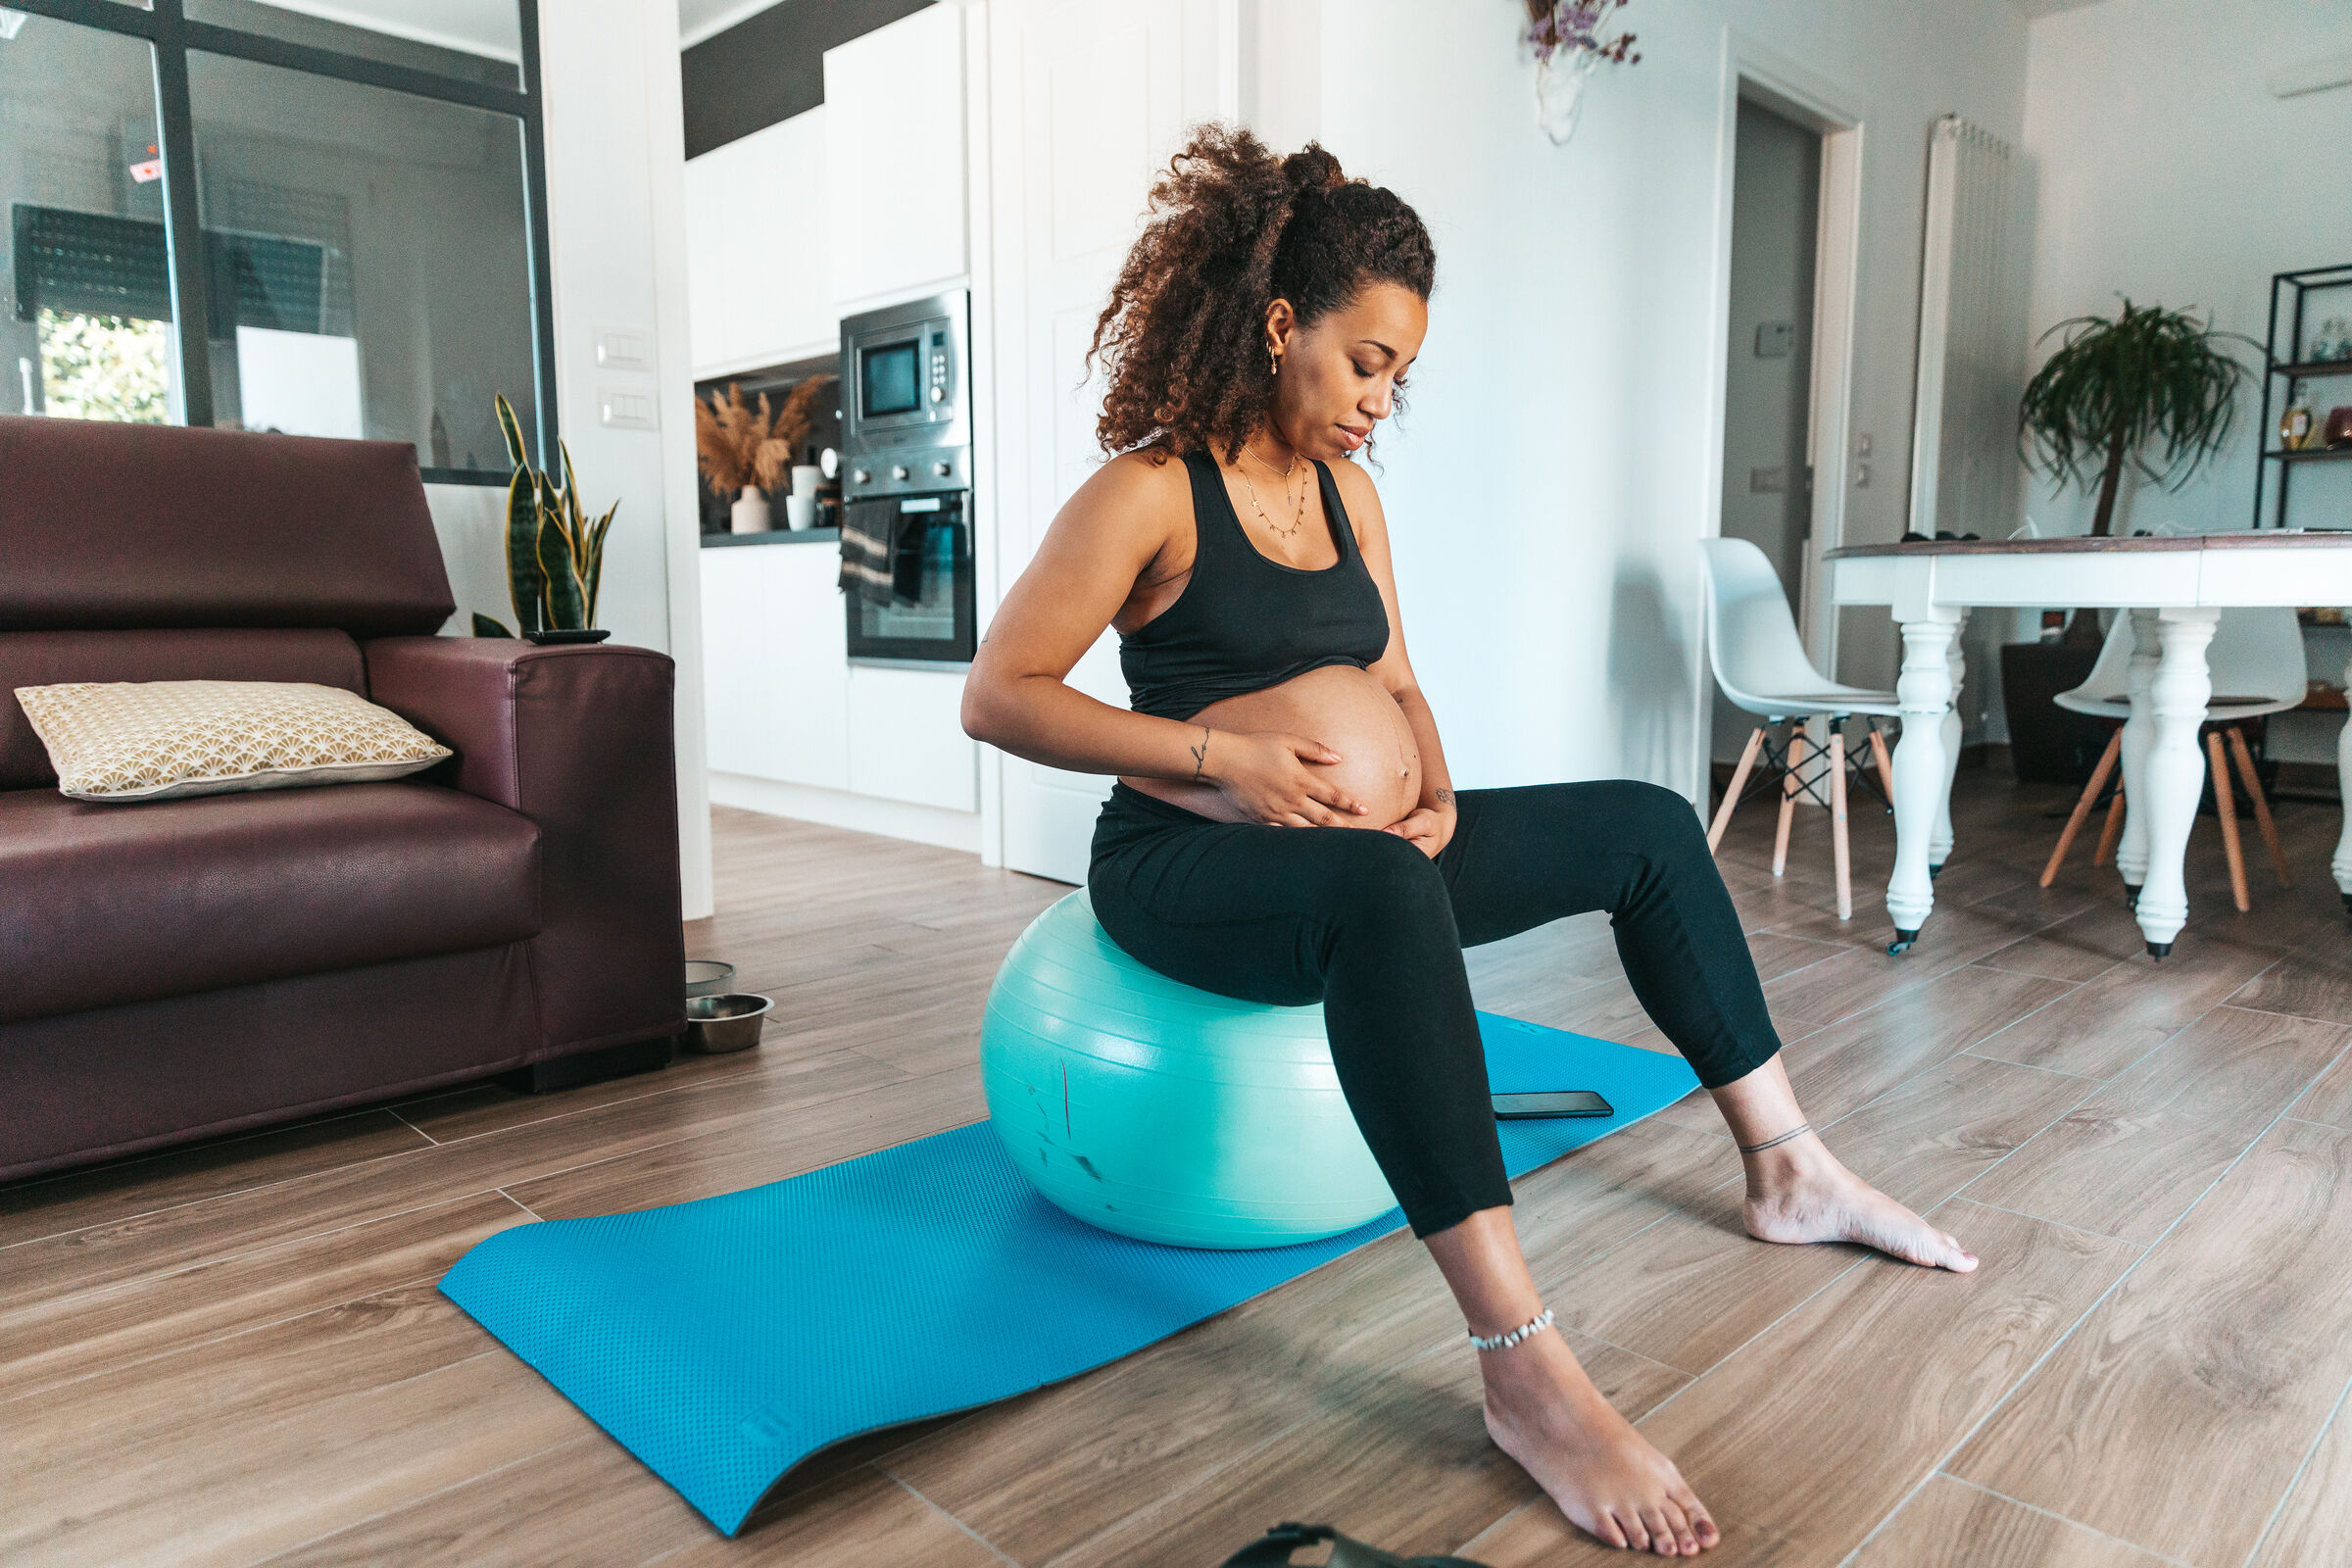 Mulher-grávida-sentada-na-bola-de-pilates-fazendo-exercicio